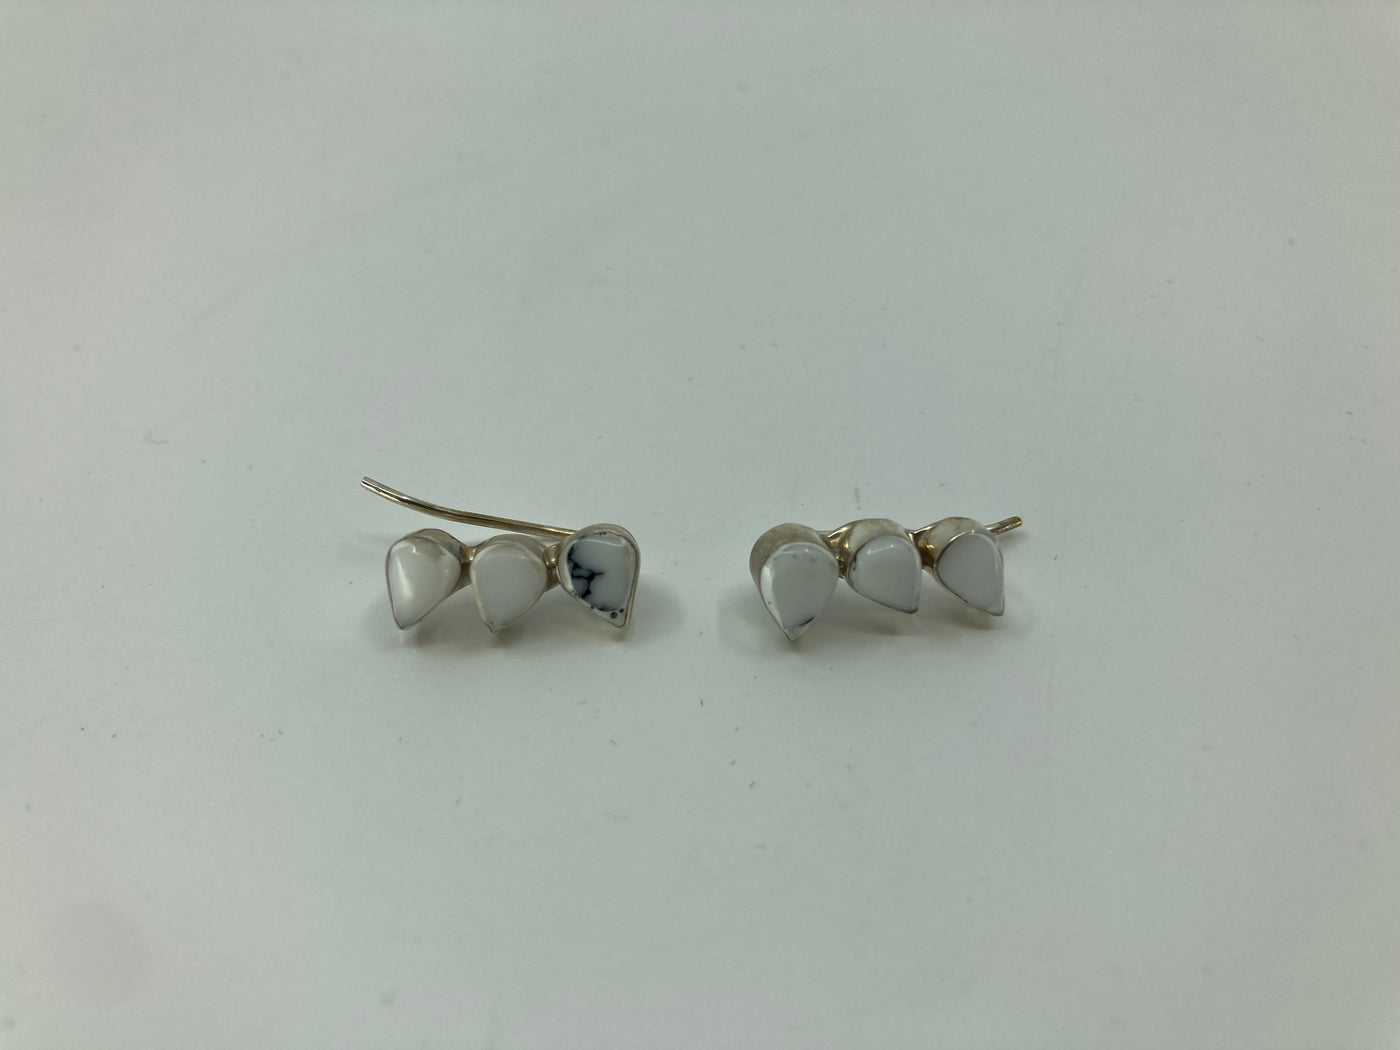 Handmade Sterling Silver and Howlite 3 Teardrop Earrings PSTPE50C